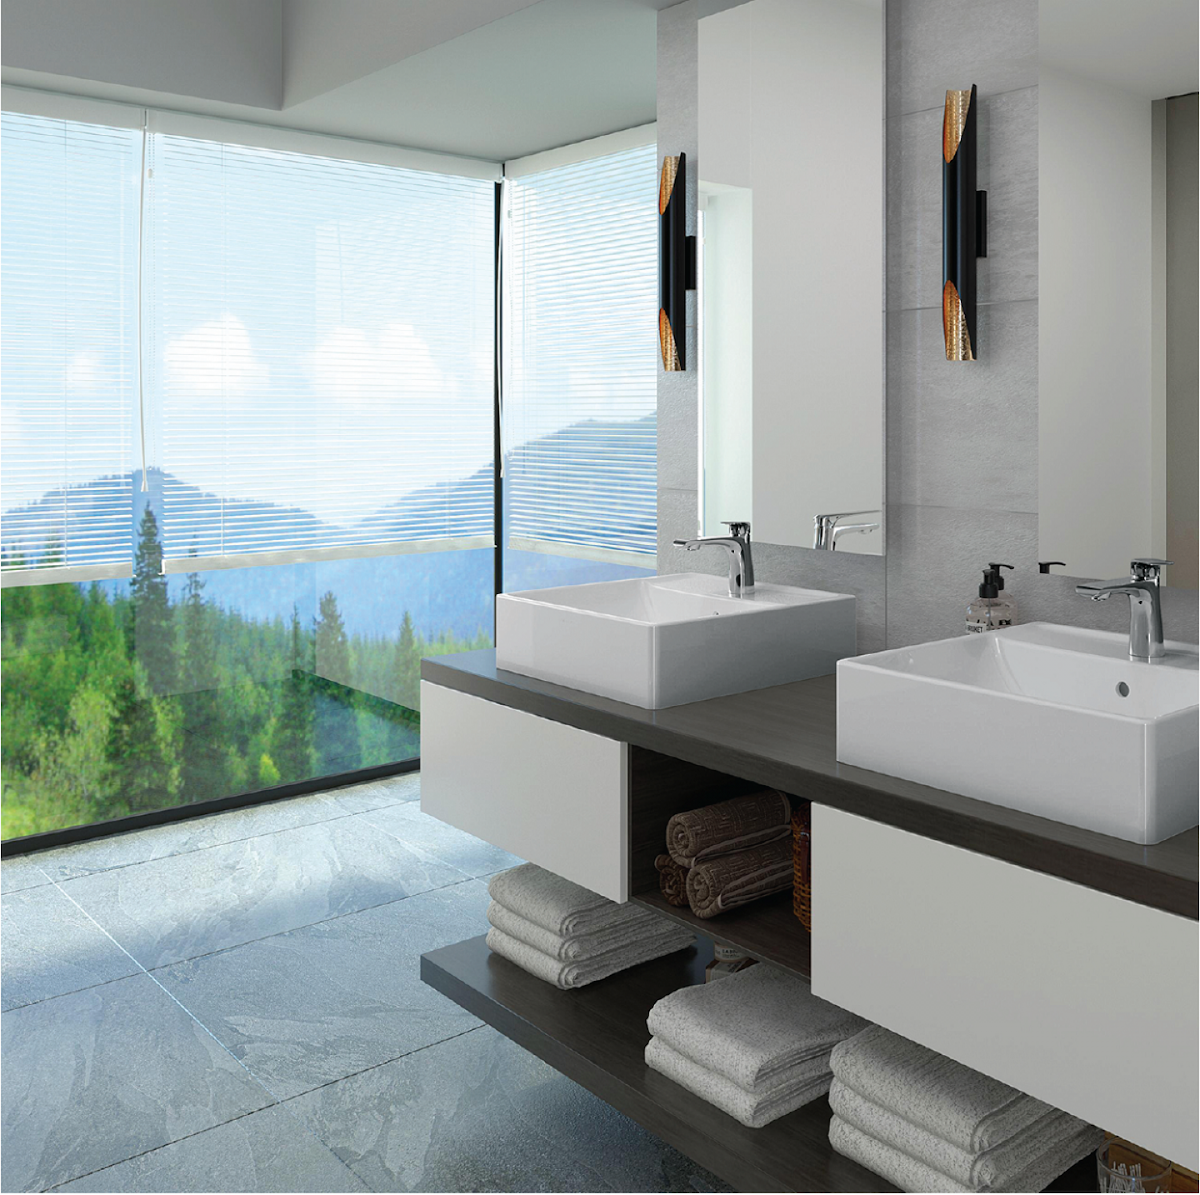 Cuộc thi thiết kế nội thất không gian tắm đầu tiên của năm 2021 chính thức khởi động